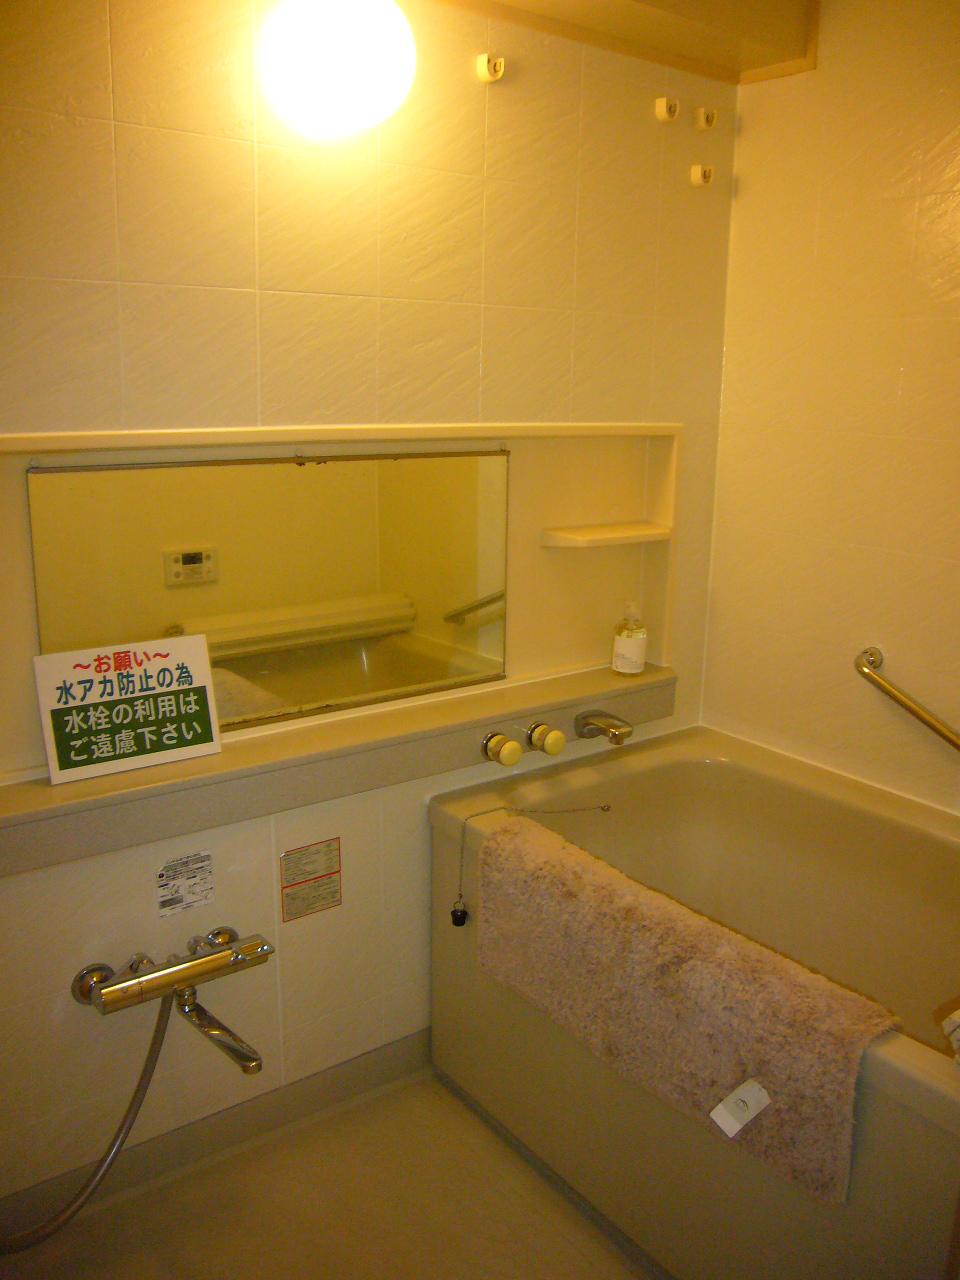 Bathroom. Indoor (12 May 2013) Shooting Reheating ・ With bathroom dryer function